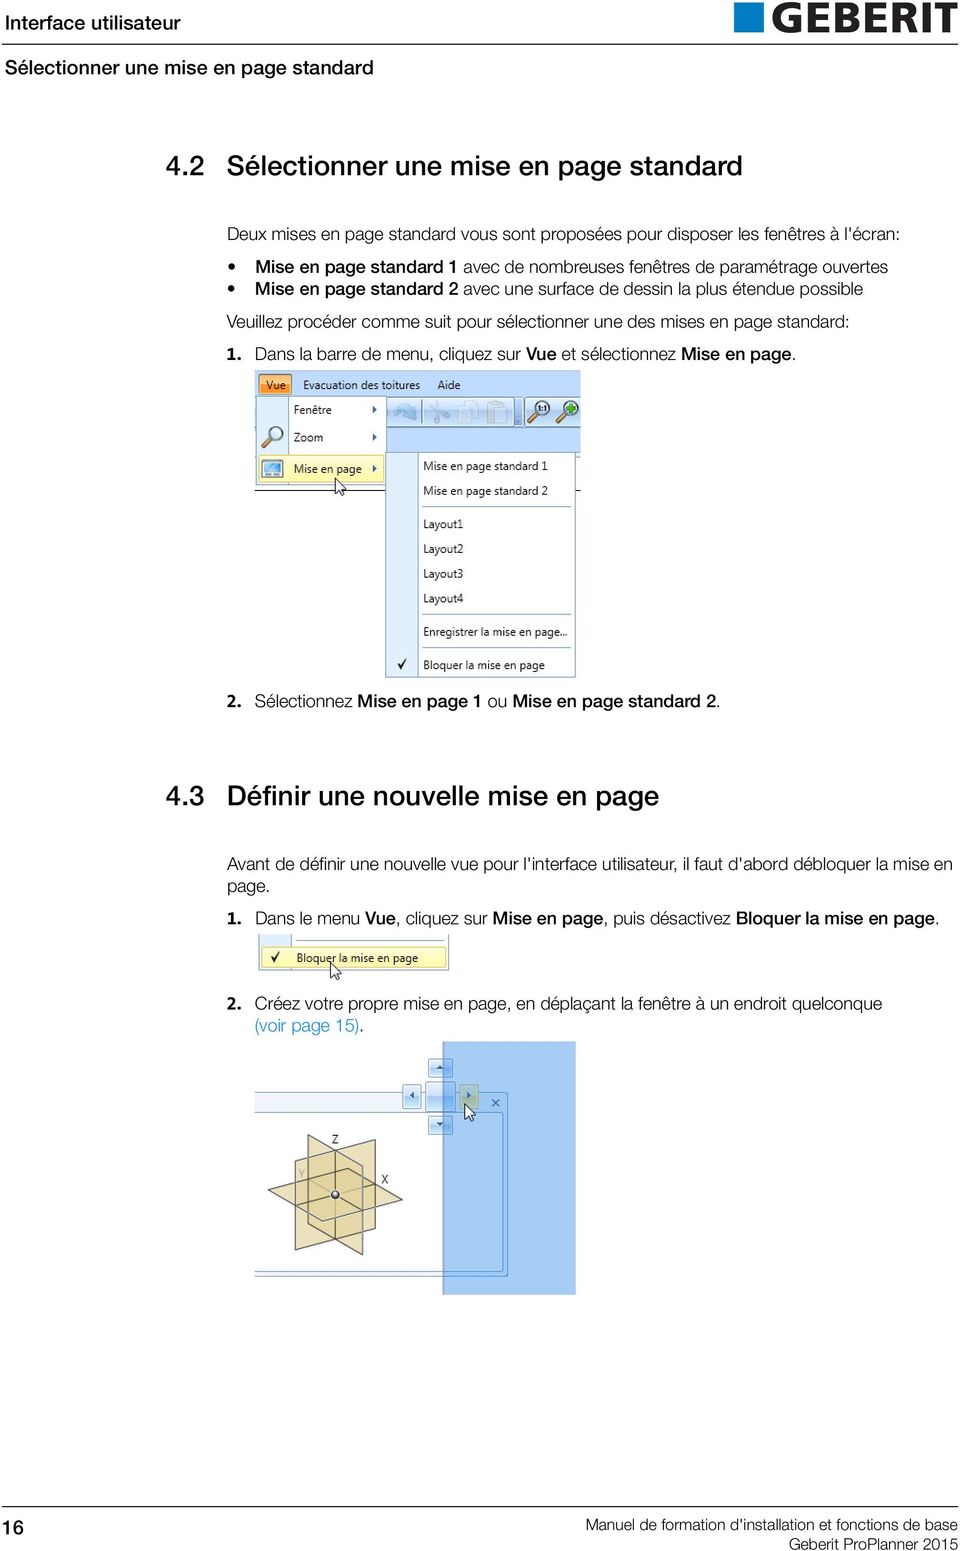 ouvertes Mise en page standard 2 avec une surface de dessin la plus étendue possible Veuillez procéder comme suit pour sélectionner une des mises en page standard: 1.